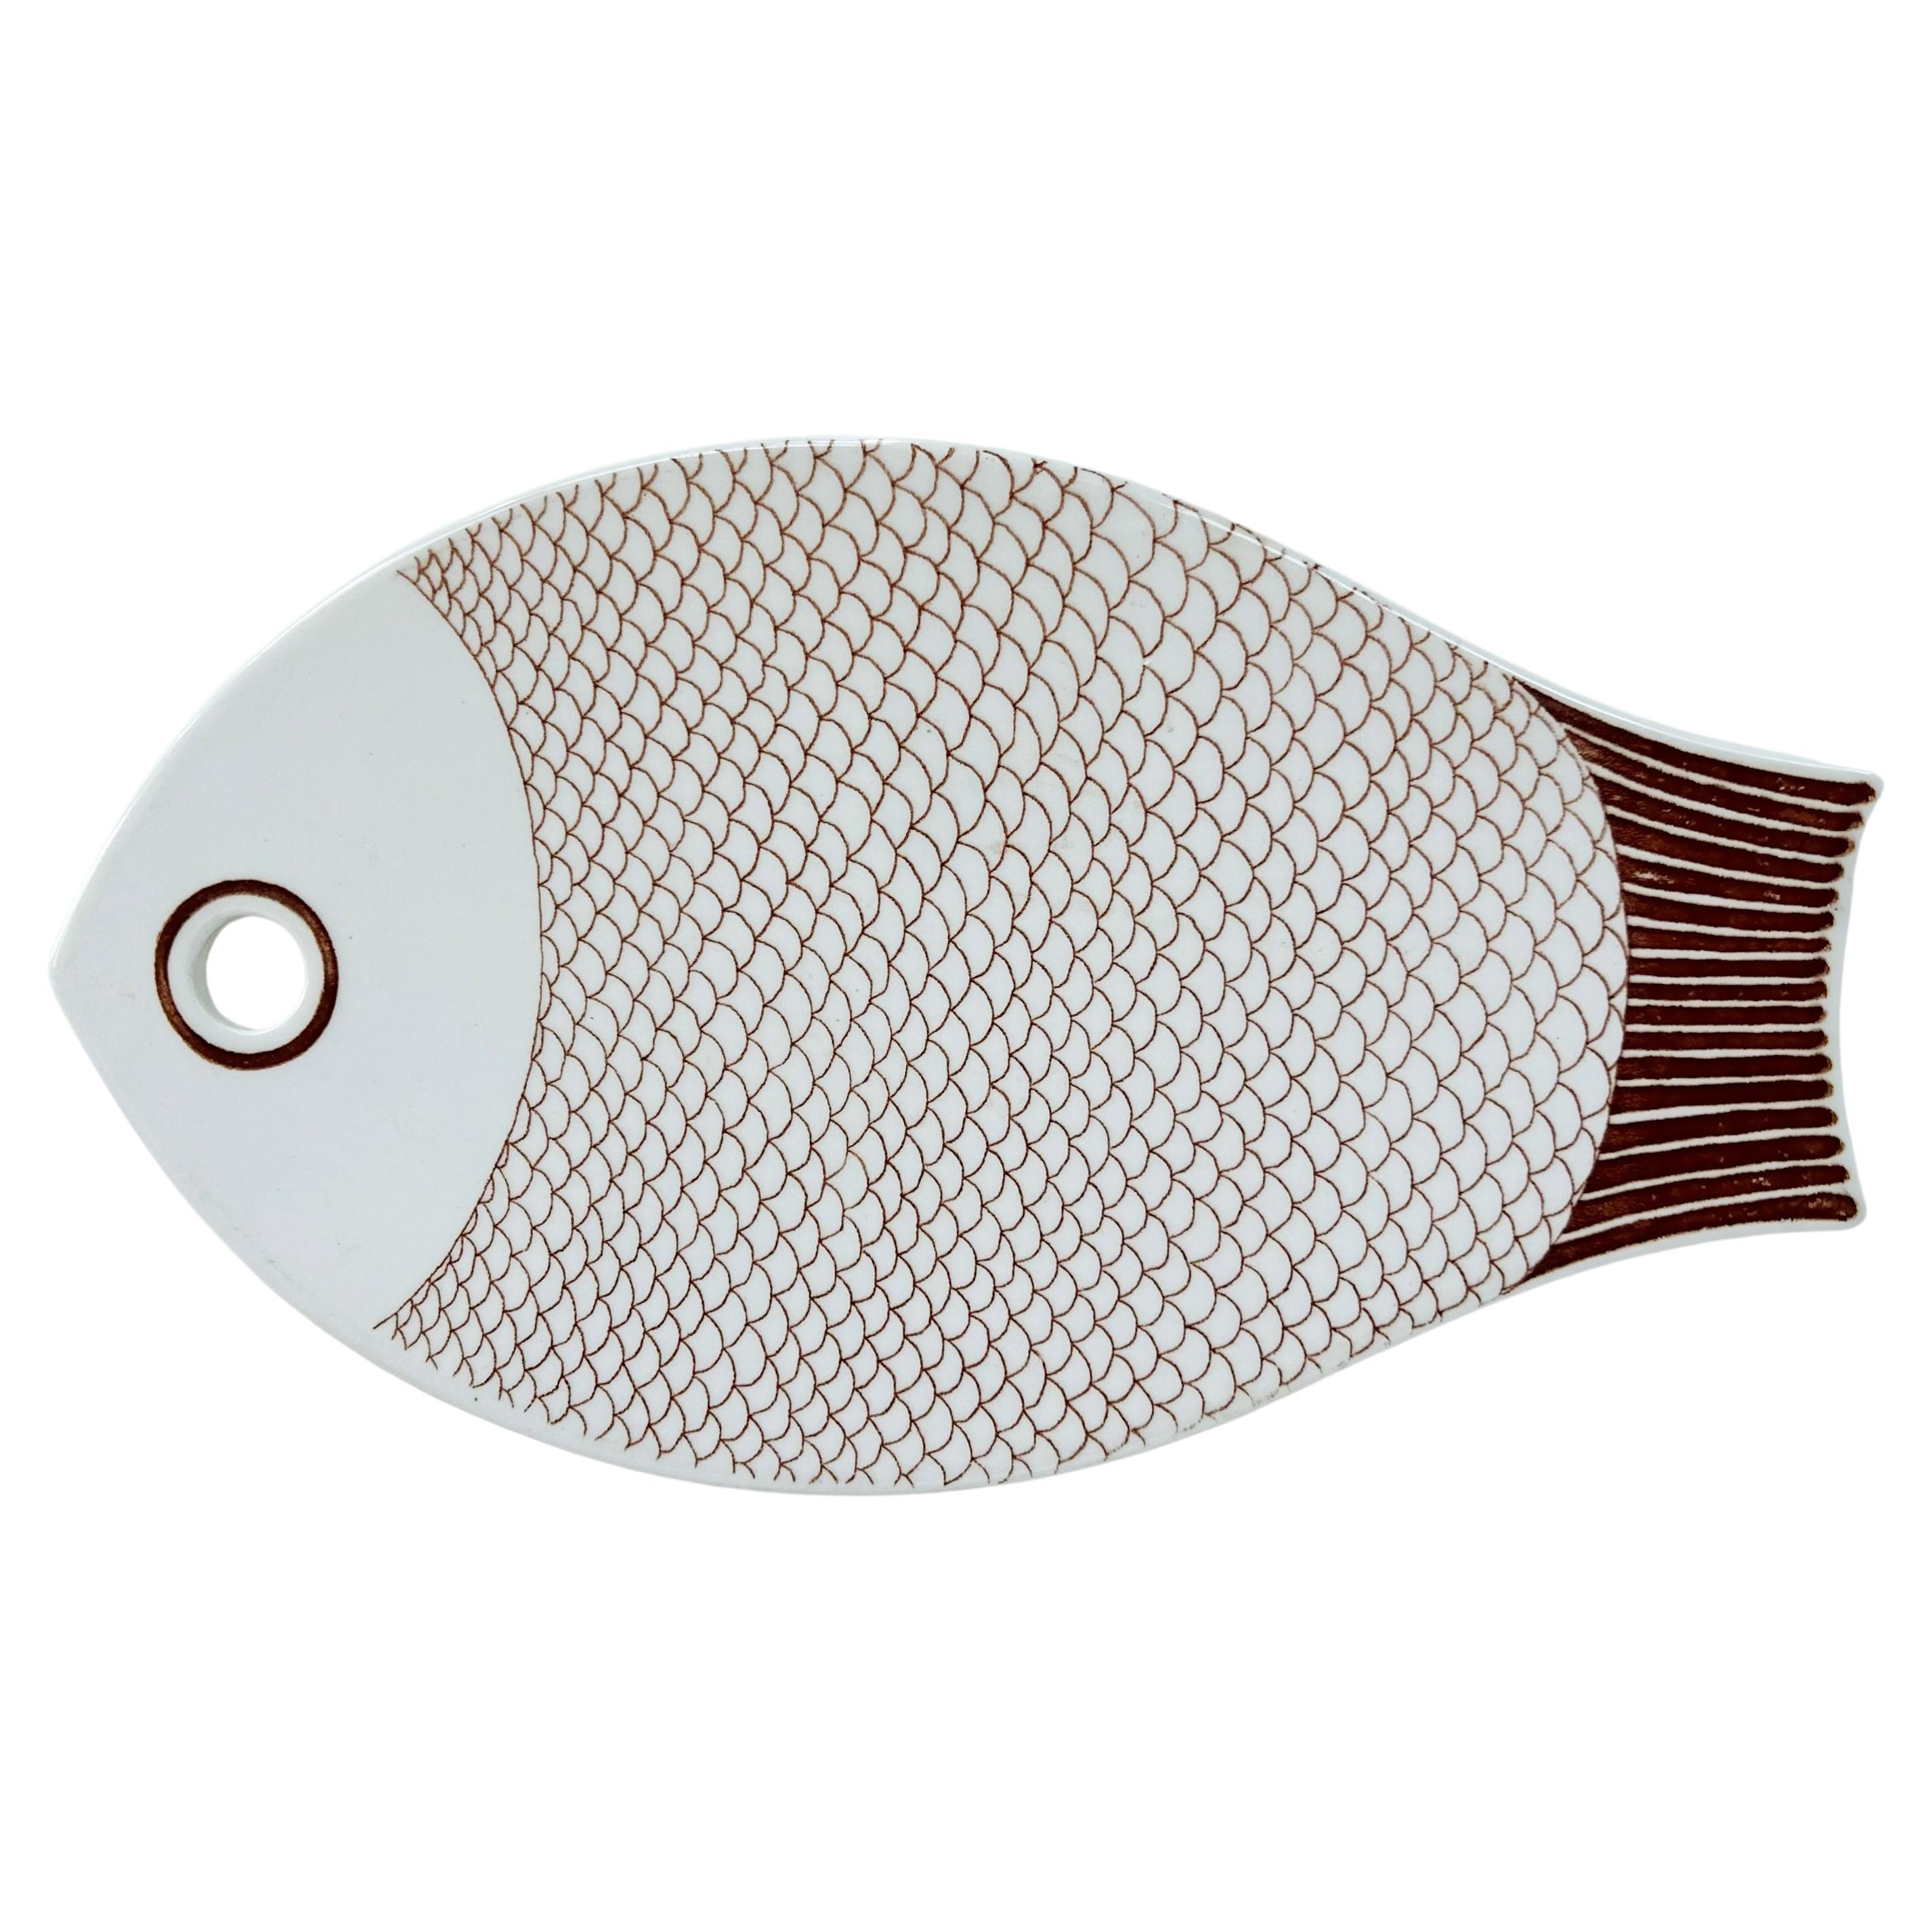 Vintage Ceramic Fish Serving Platter, Danish Modern Style For Sale